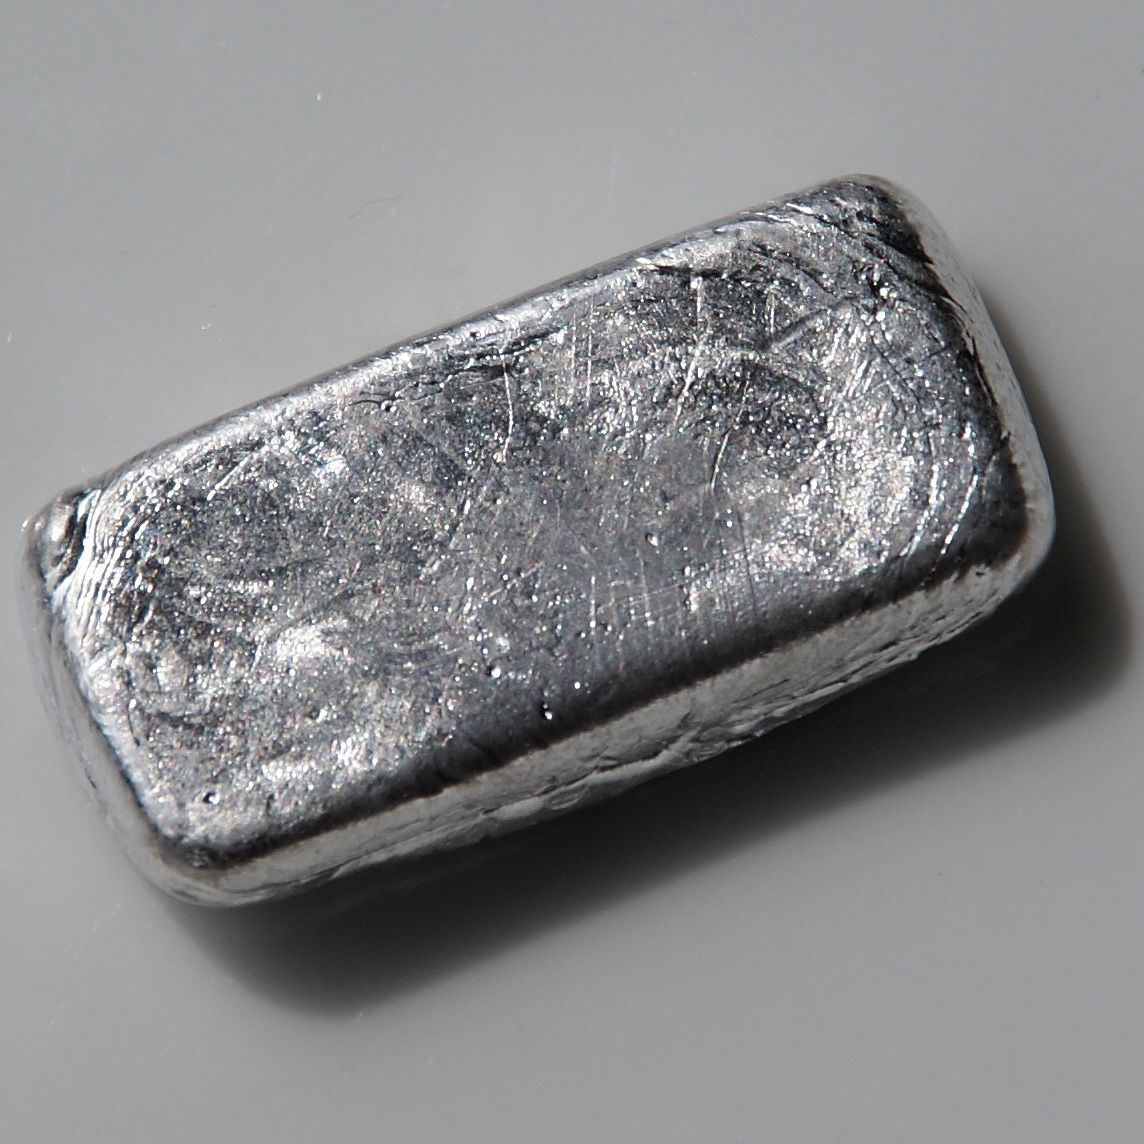 iridium metals